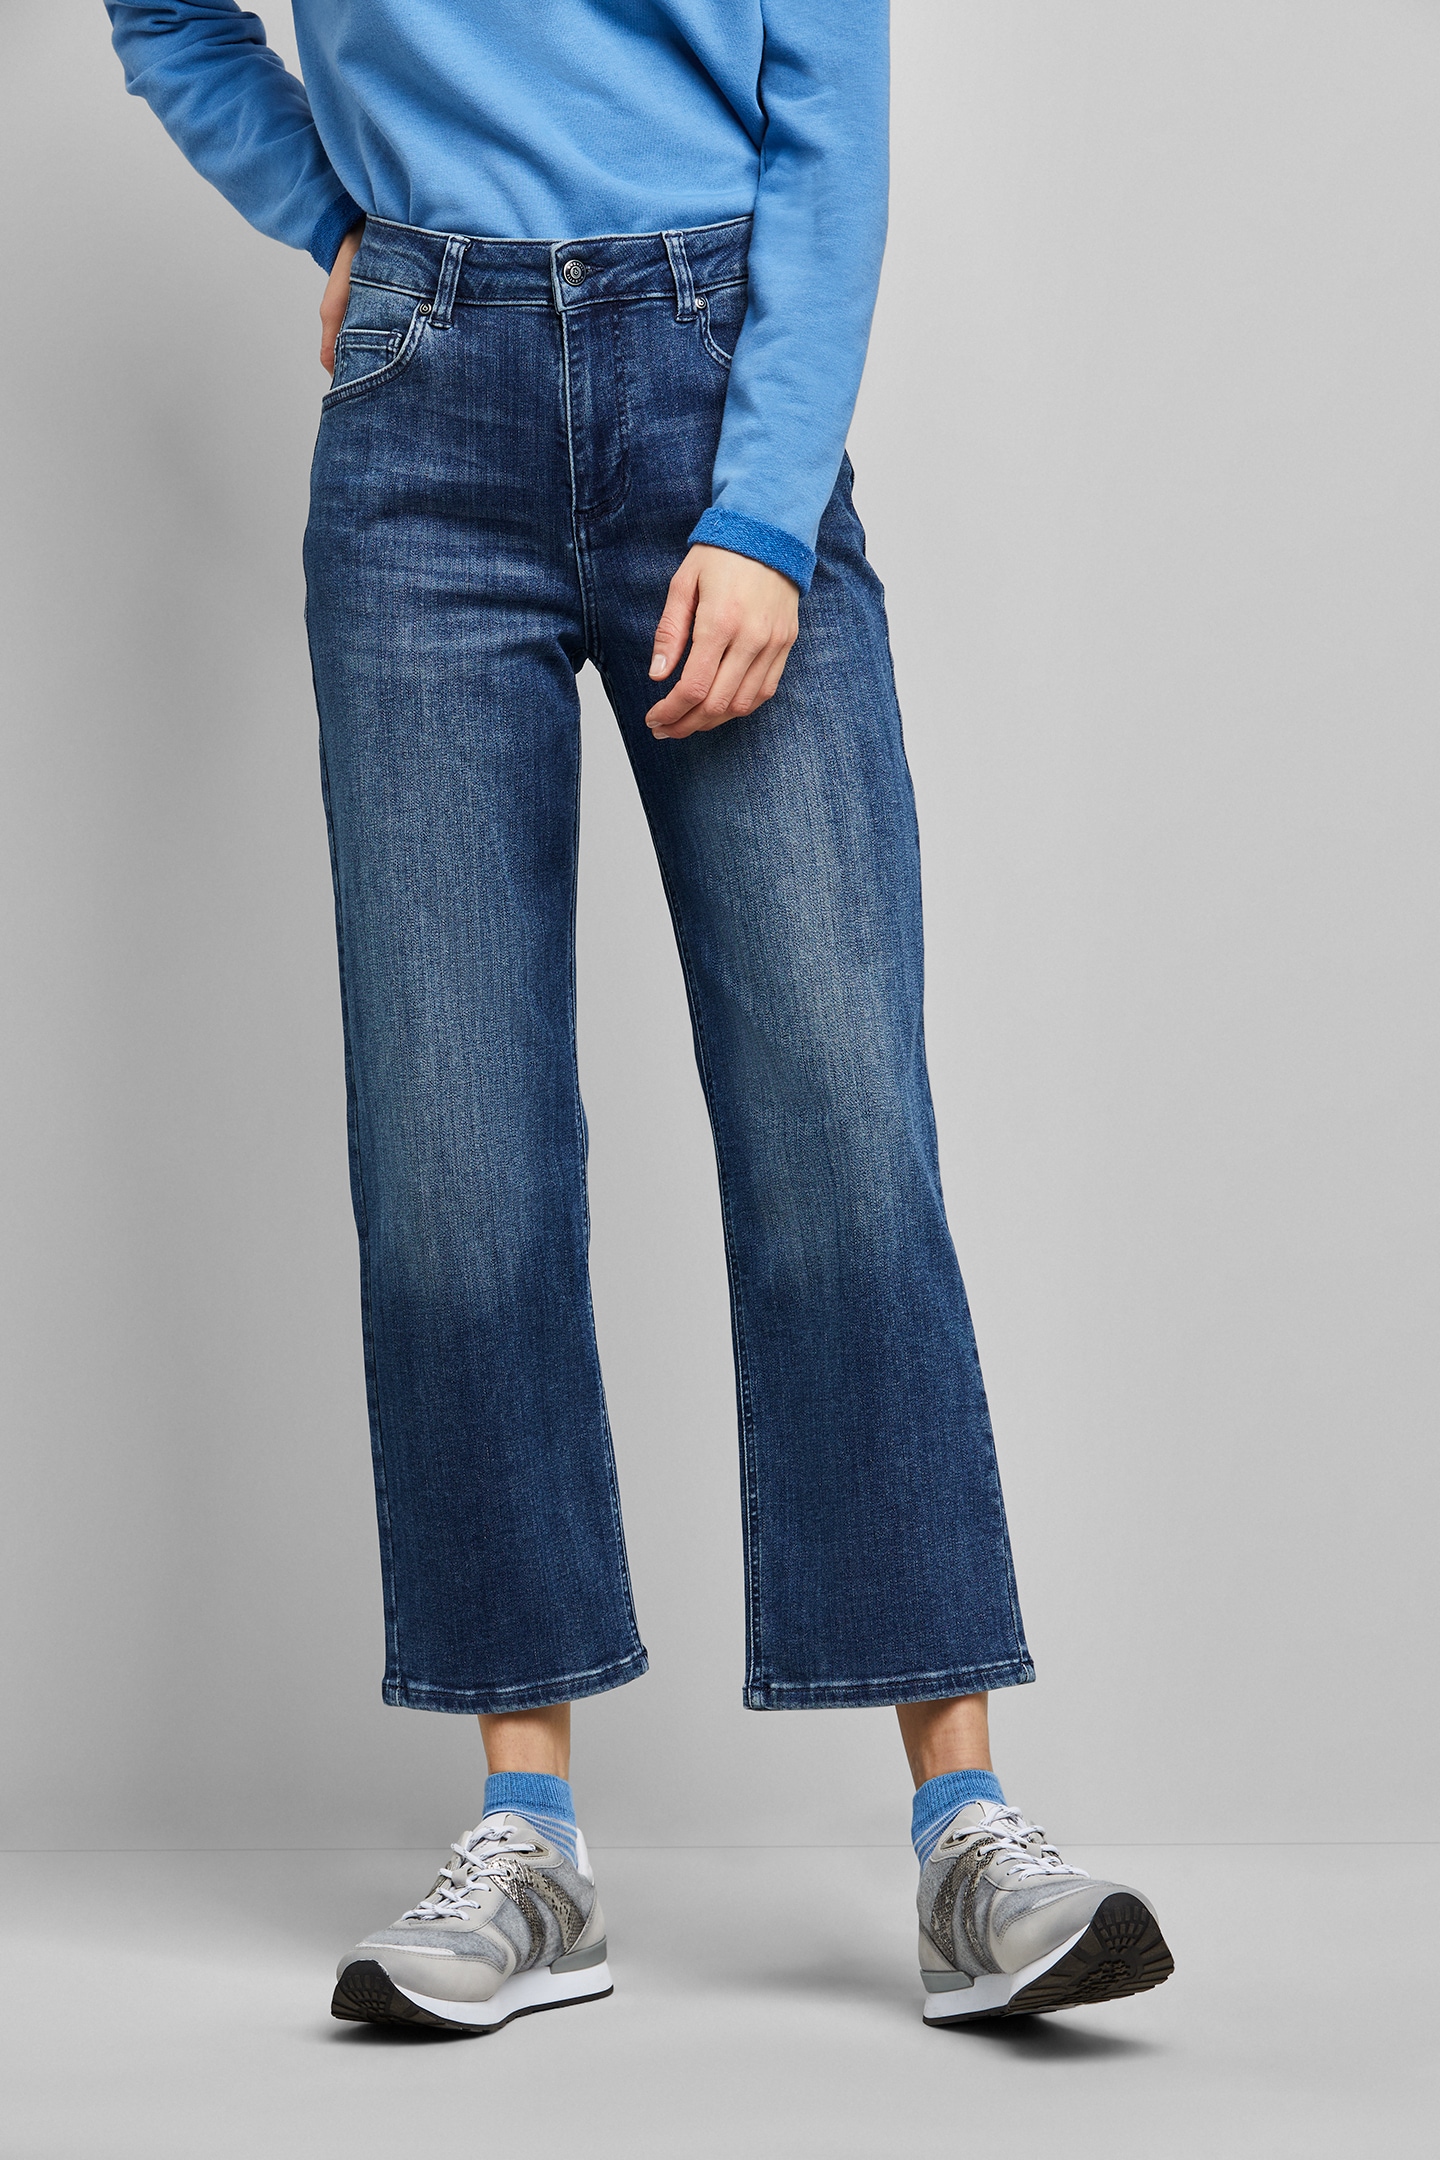 aus in Schweiz bugatti 5-Pocket-Jeans, elastischer online Fit Baumwollware Jelmoli-Versand kaufen bei Relax